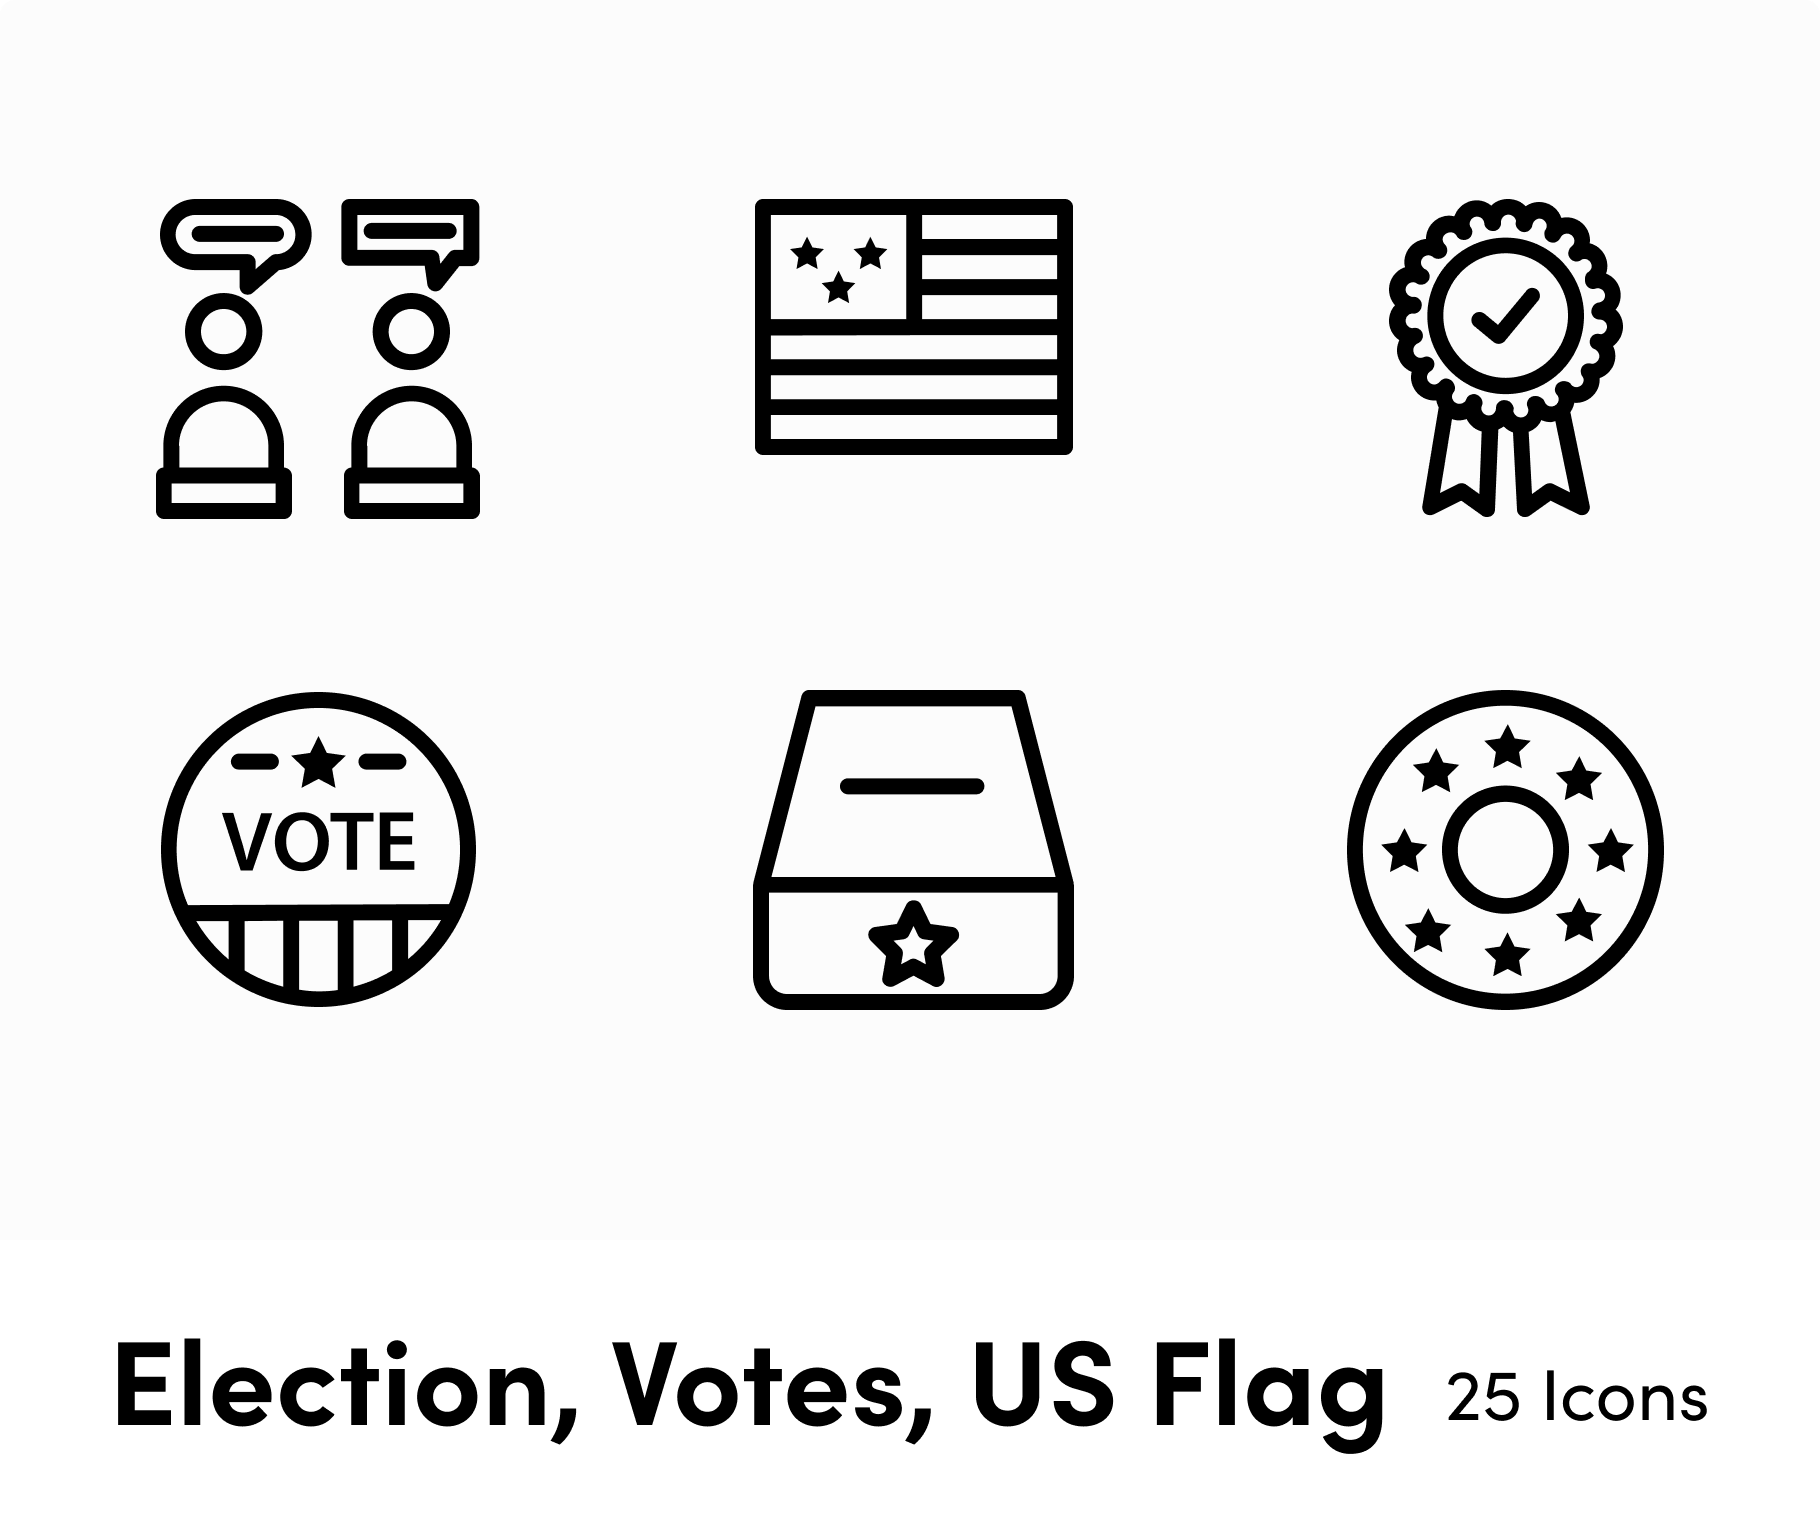 vote powerpoint background